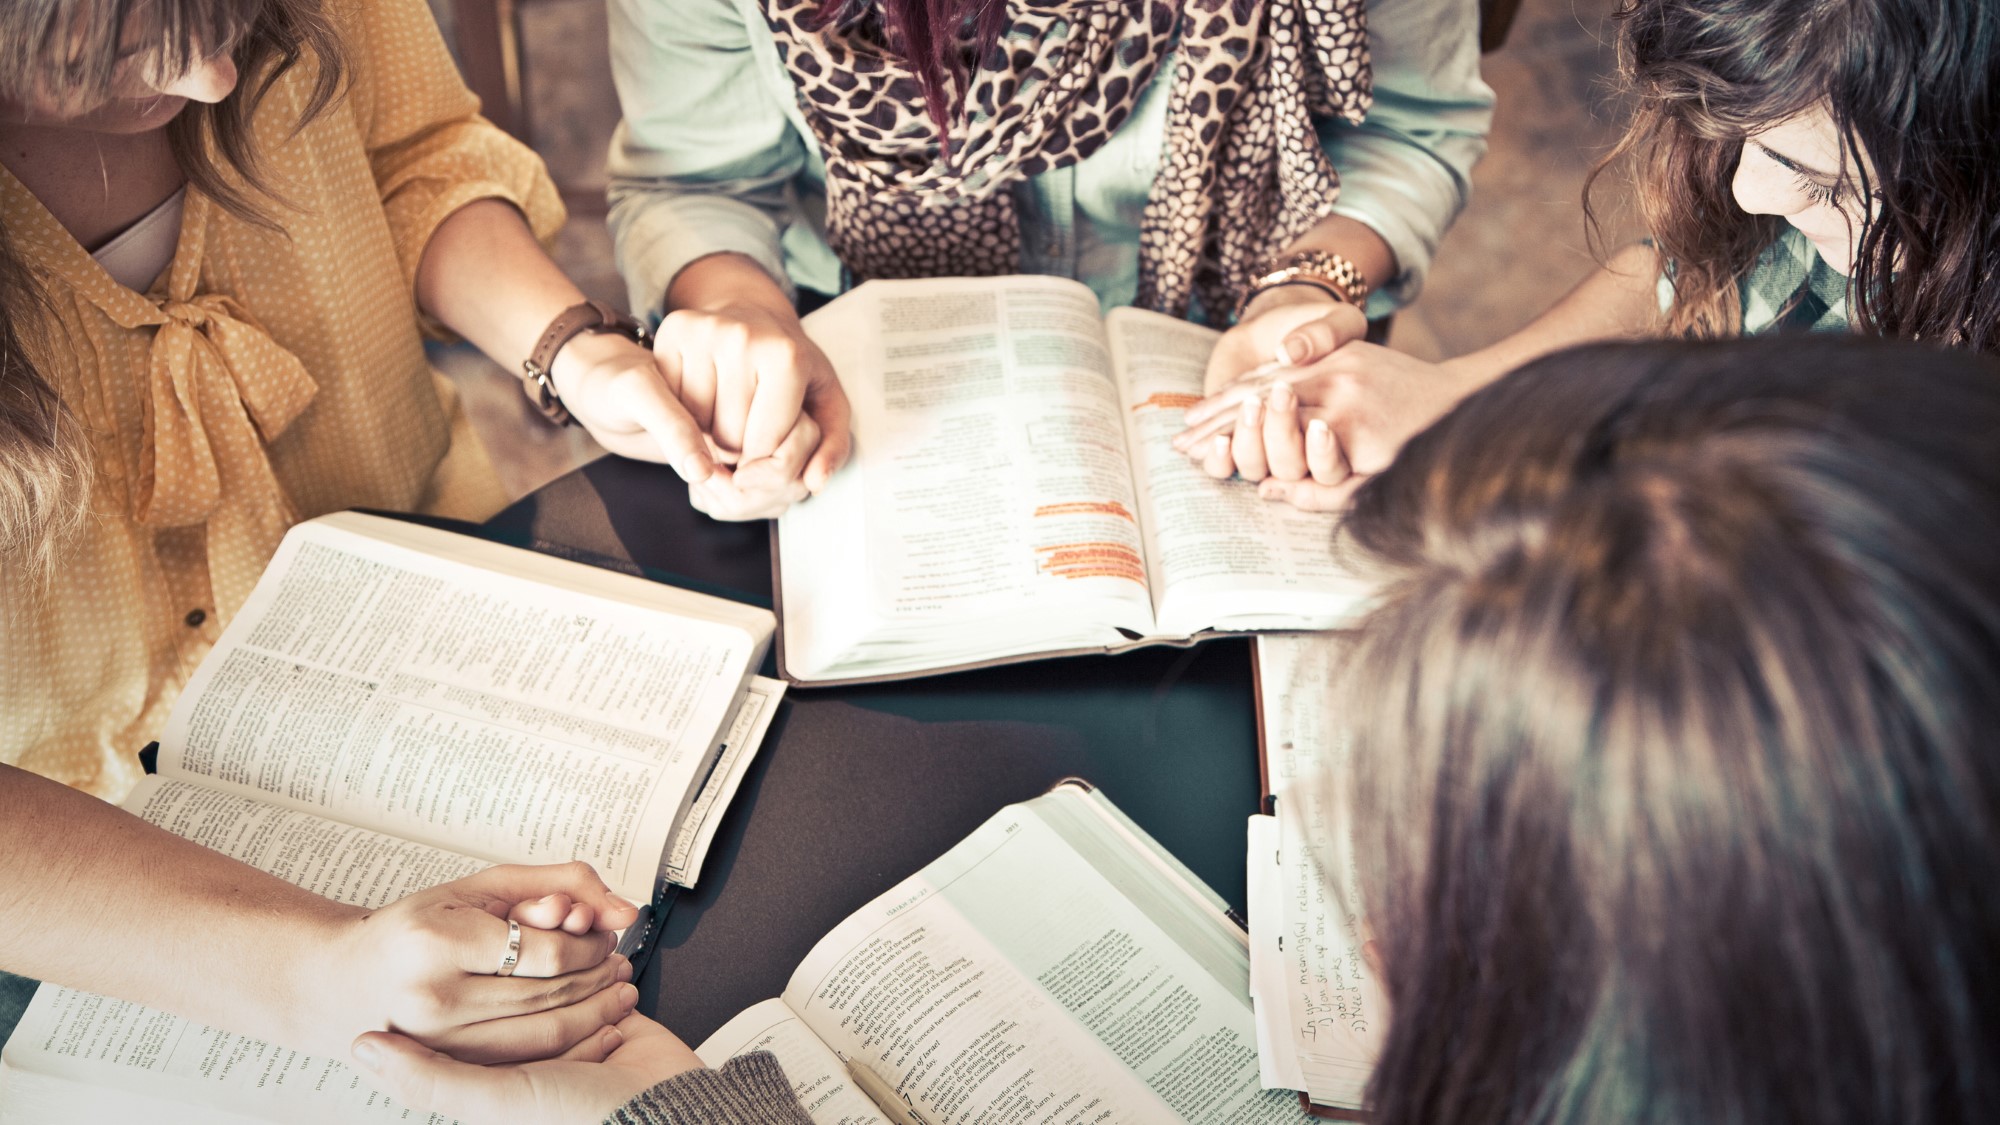 Kvinner holder hender i bønn over åpne bibler